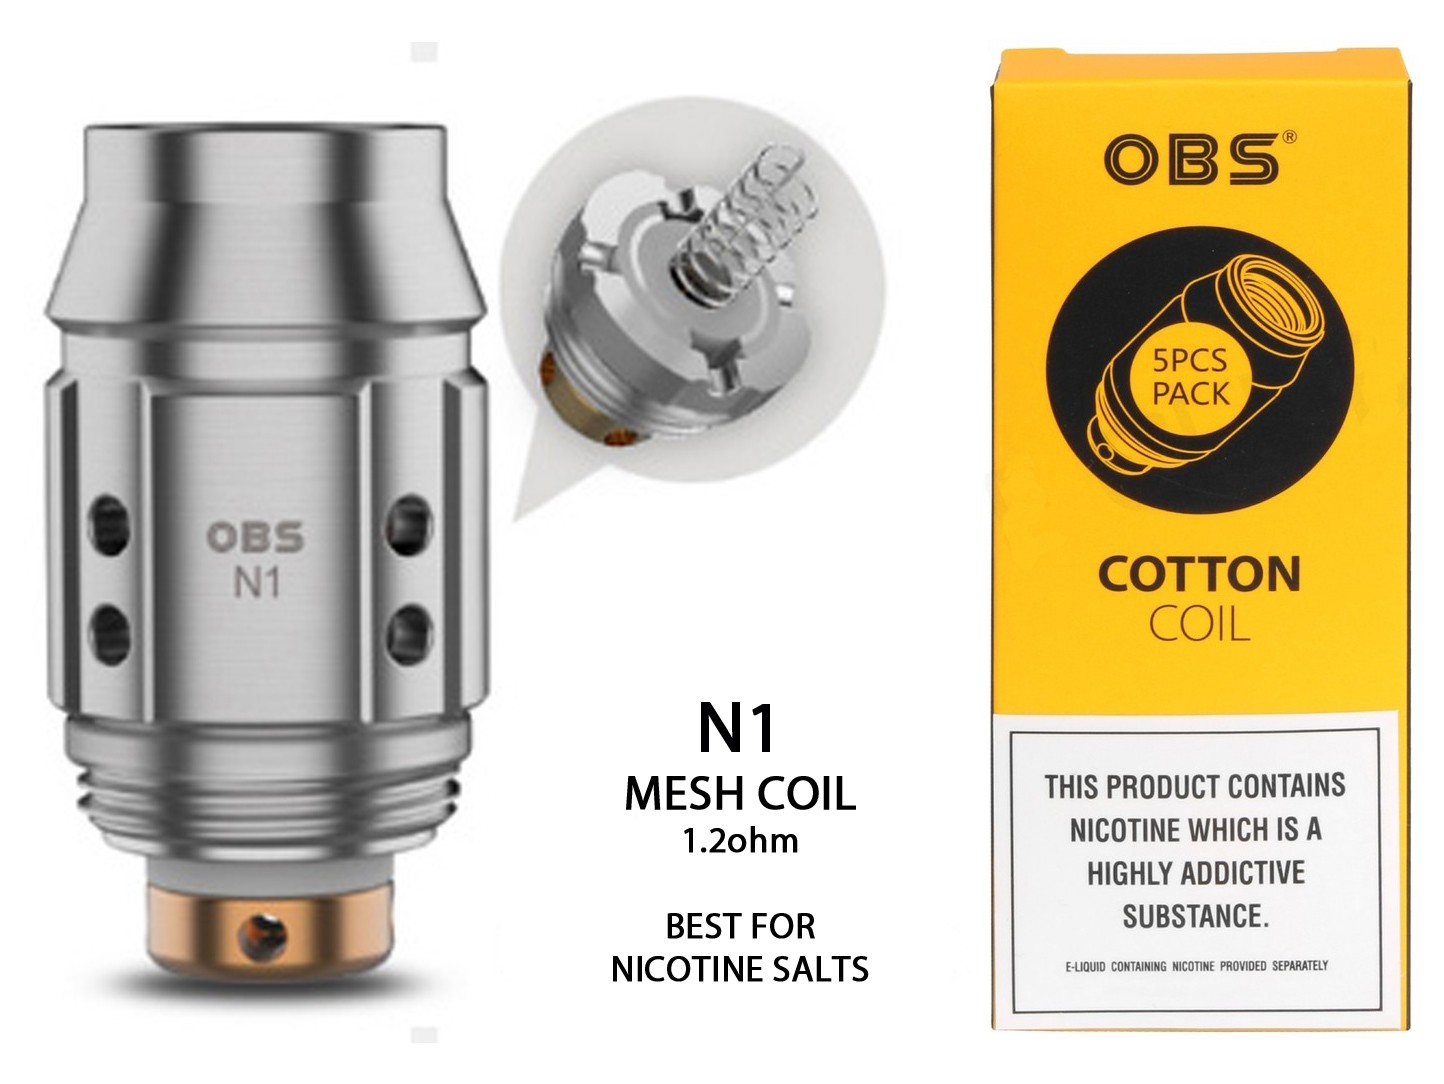 OBS - CUBE MINI COILS (N1)